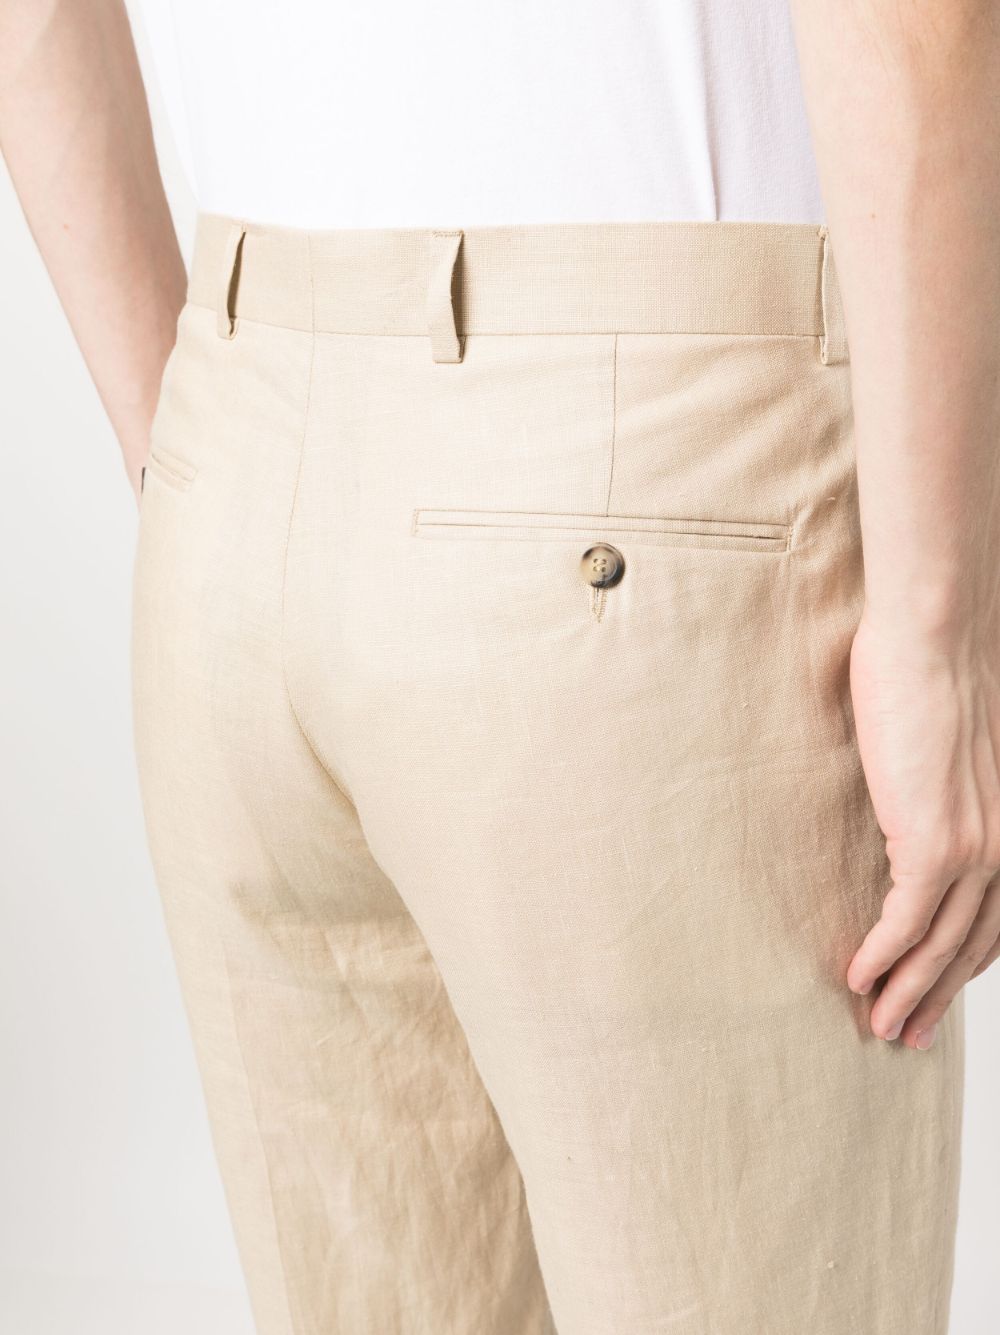 Regular Fit Linen Trousers